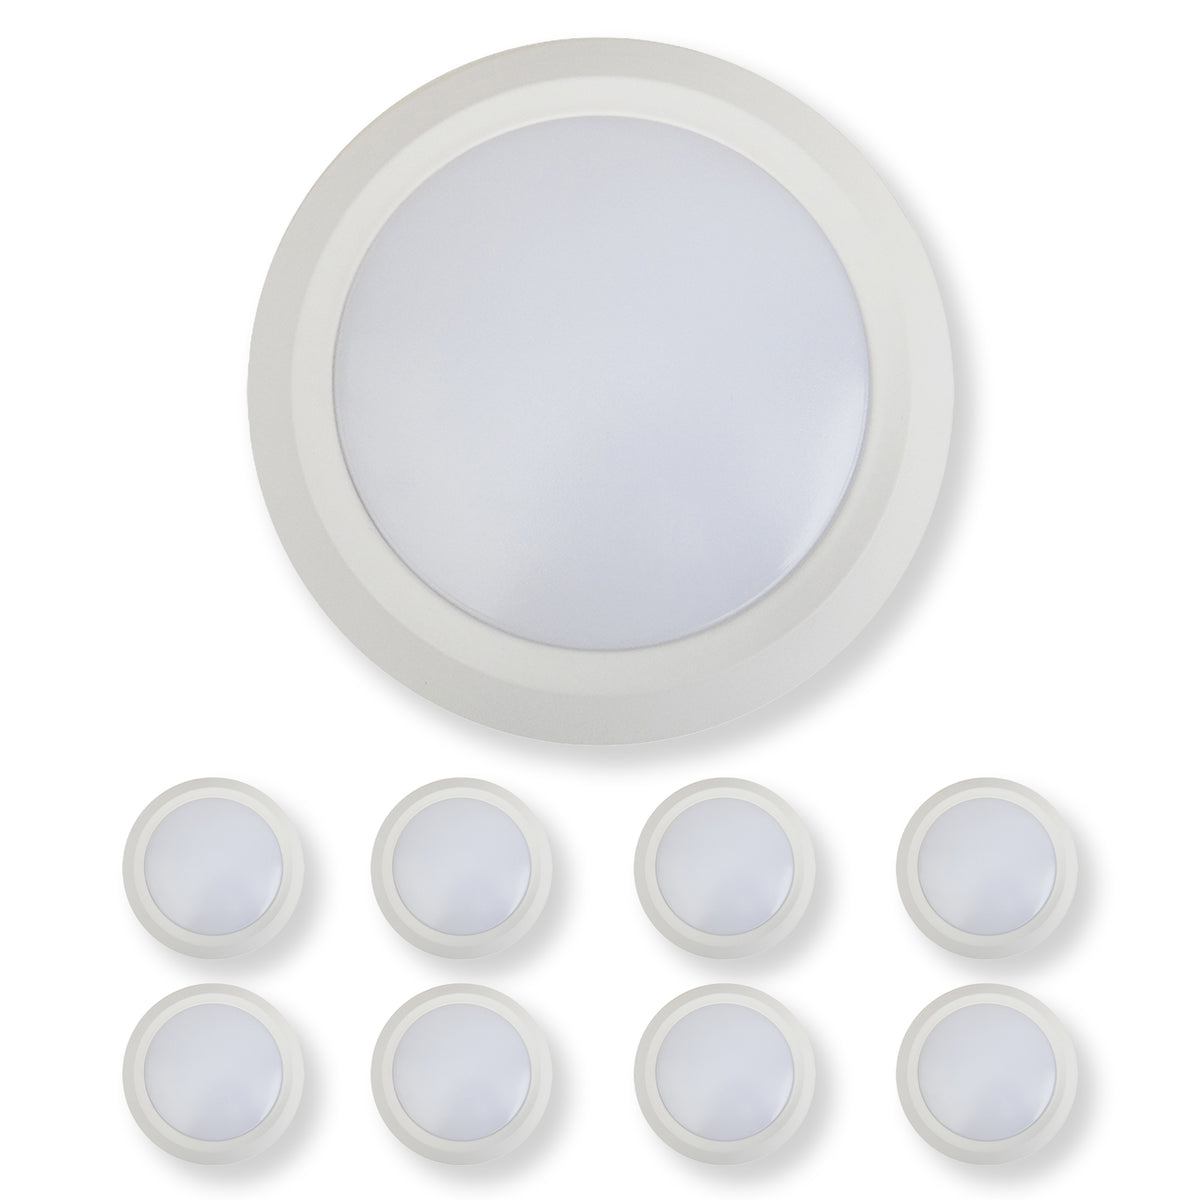 7 Inch LED Disk Light 15W - 3000K - 1080Lumens - White (2 Pack, 4 Pack, 6 Pack, 8 Pack)